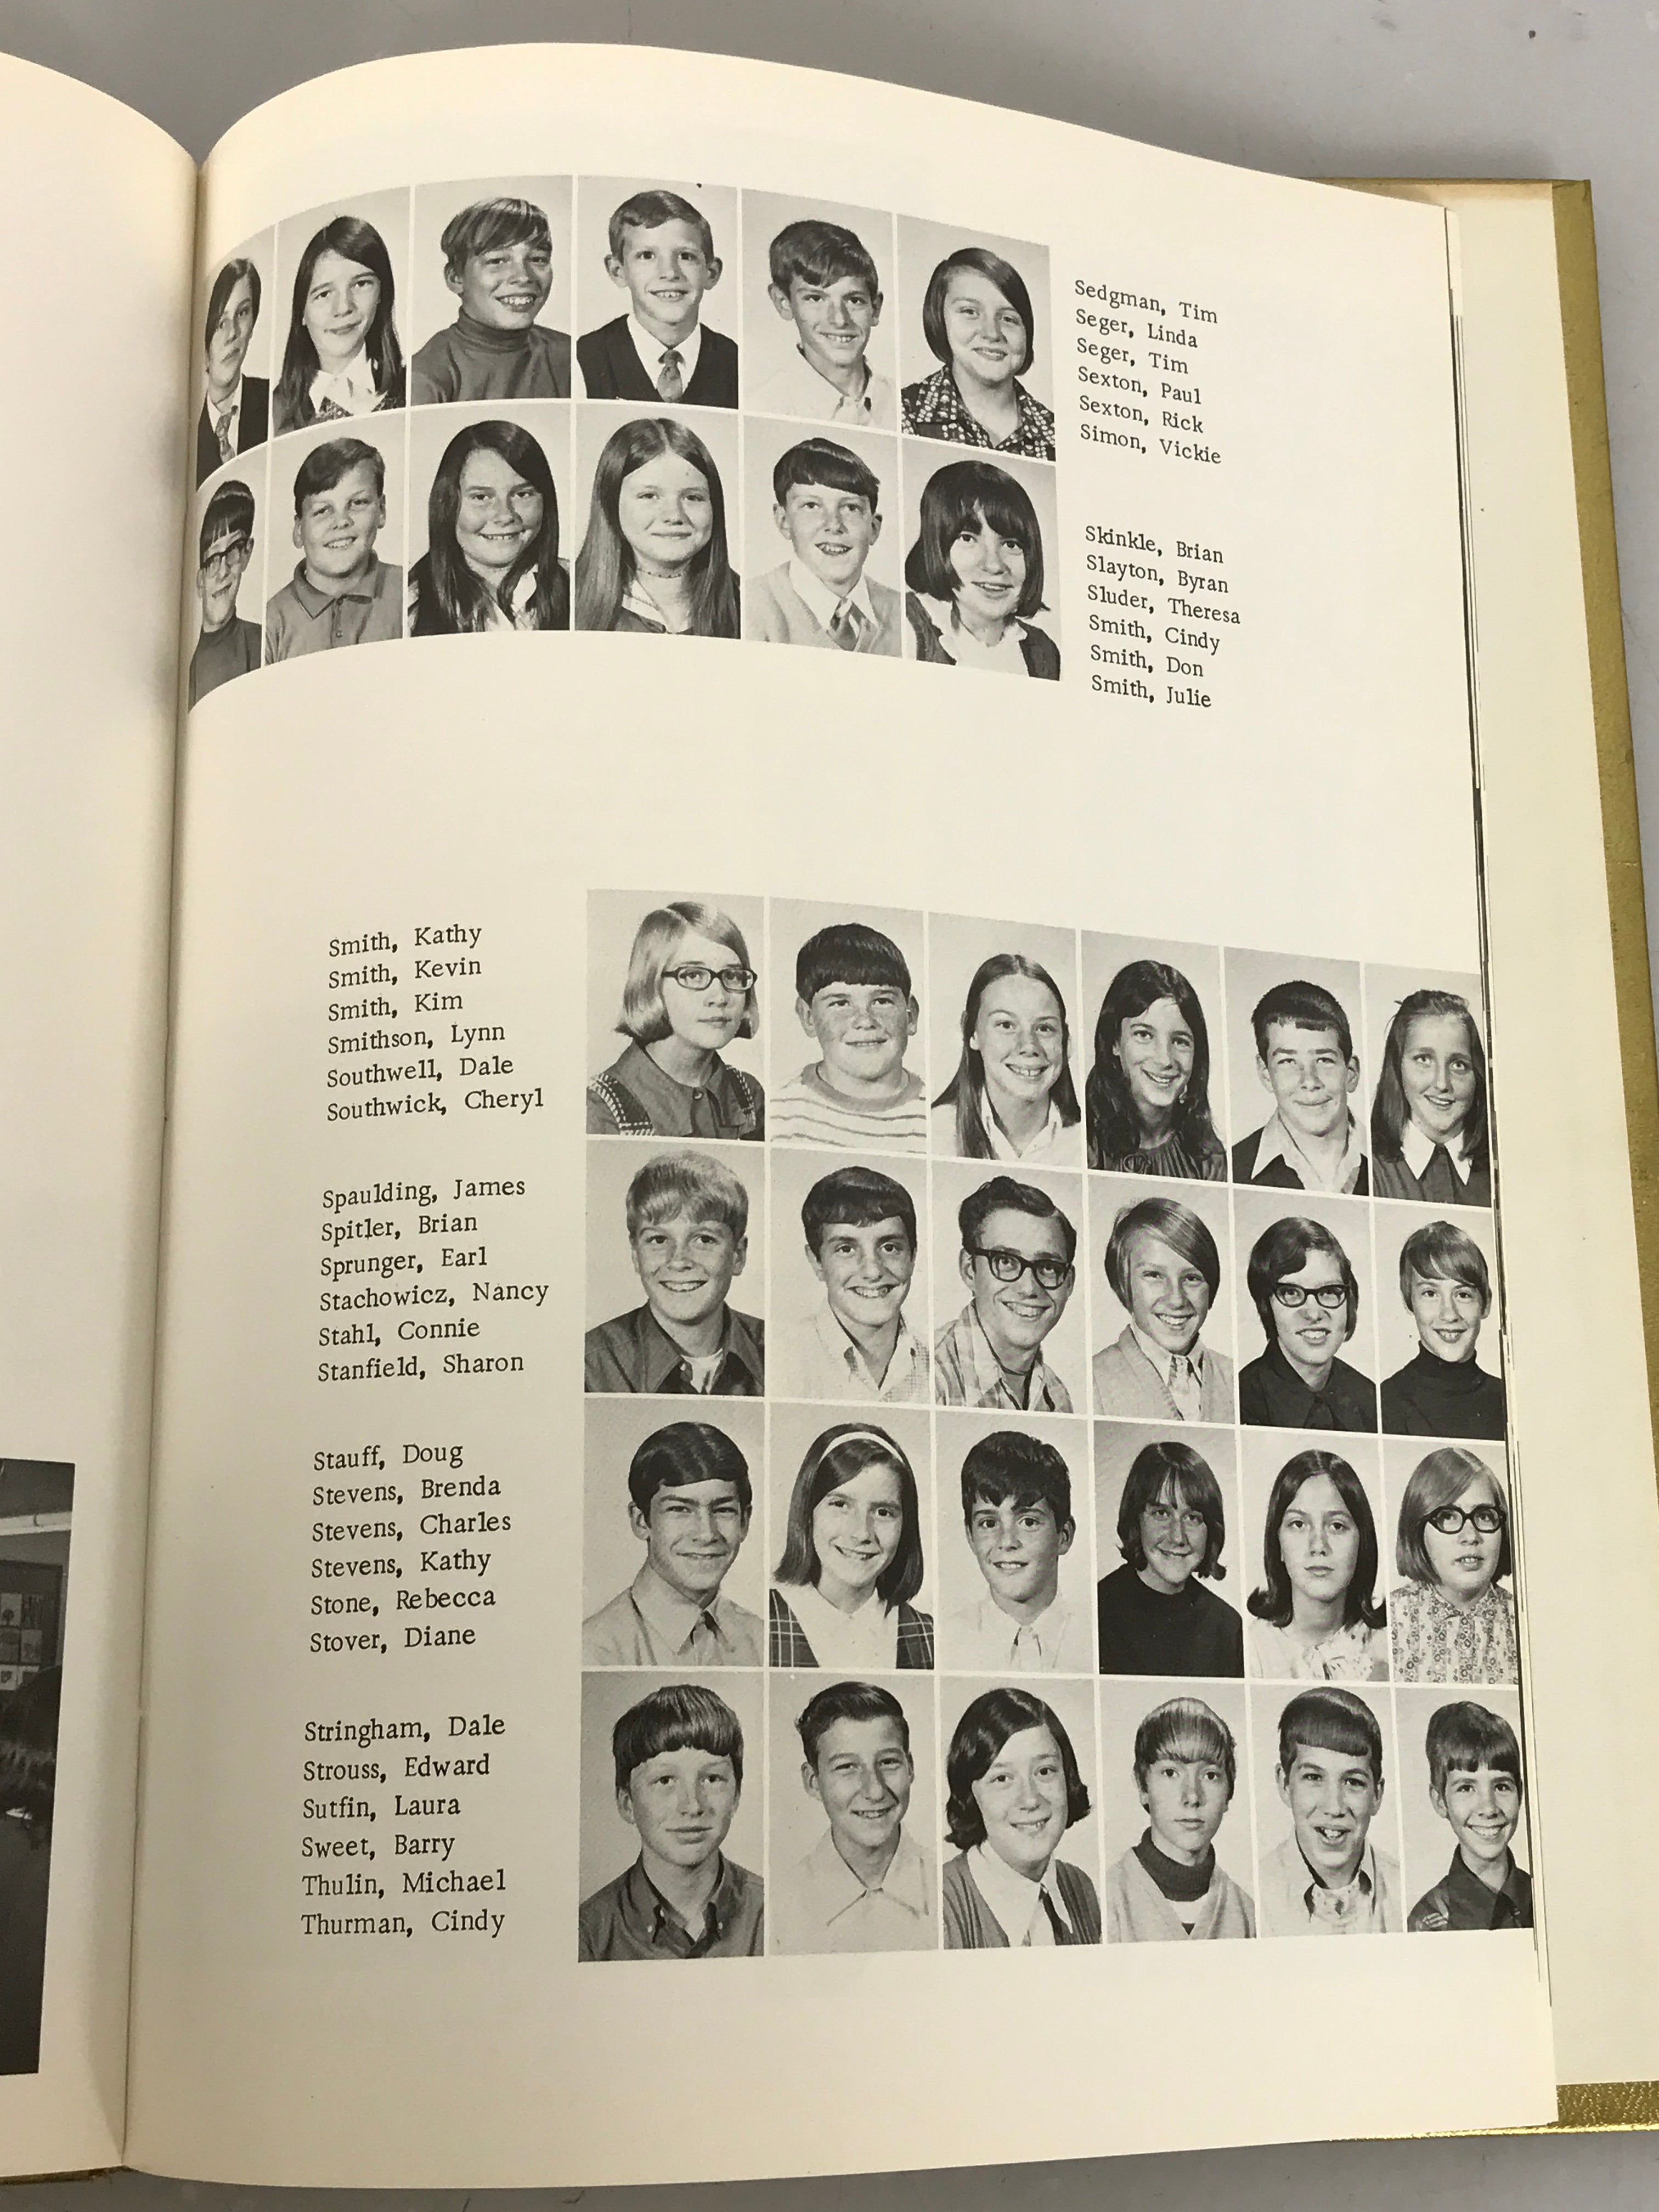 1971 Northwest Junior High School Yearbook Jackson Michigan HC